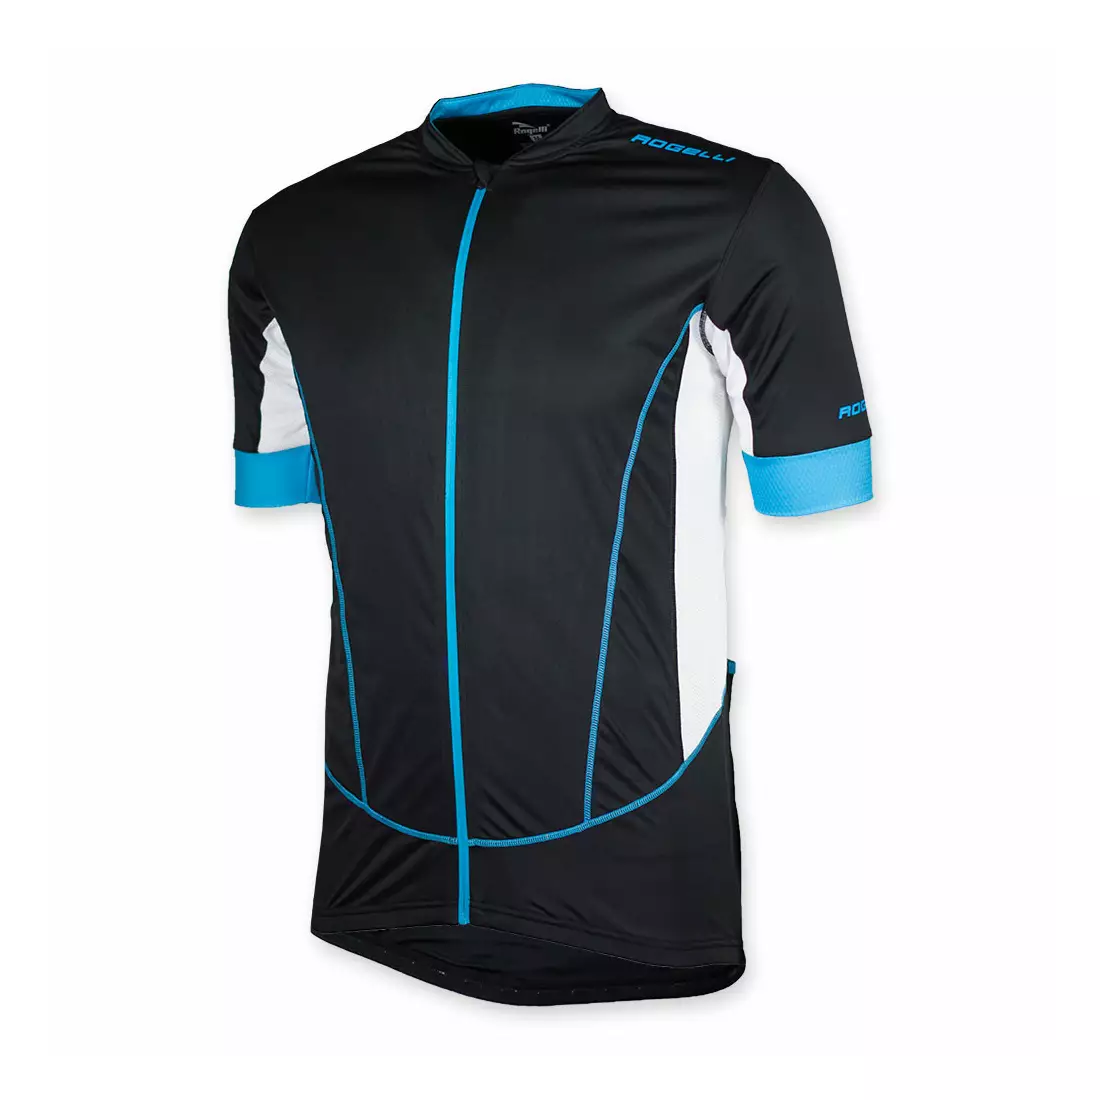 ROGELLI PONZA férfi kerékpáros trikó fekete-kék színben